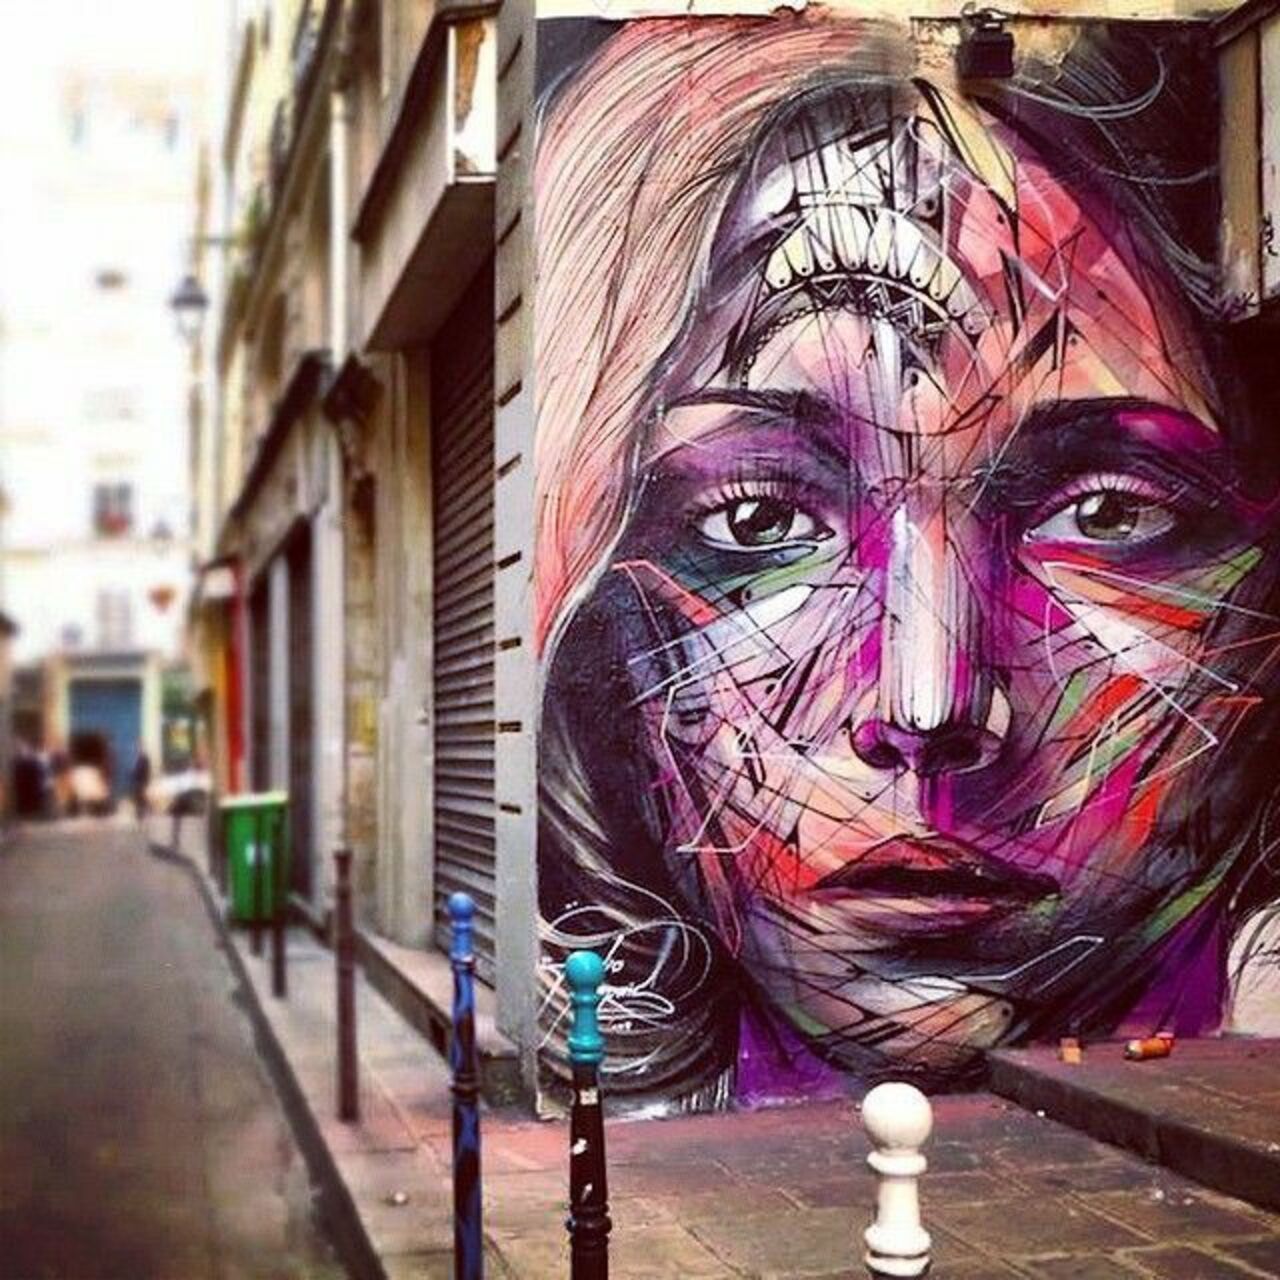 Hopare in Paris#streetart #mural #art #graffiti https://t.co/ZXHOpdZYL8